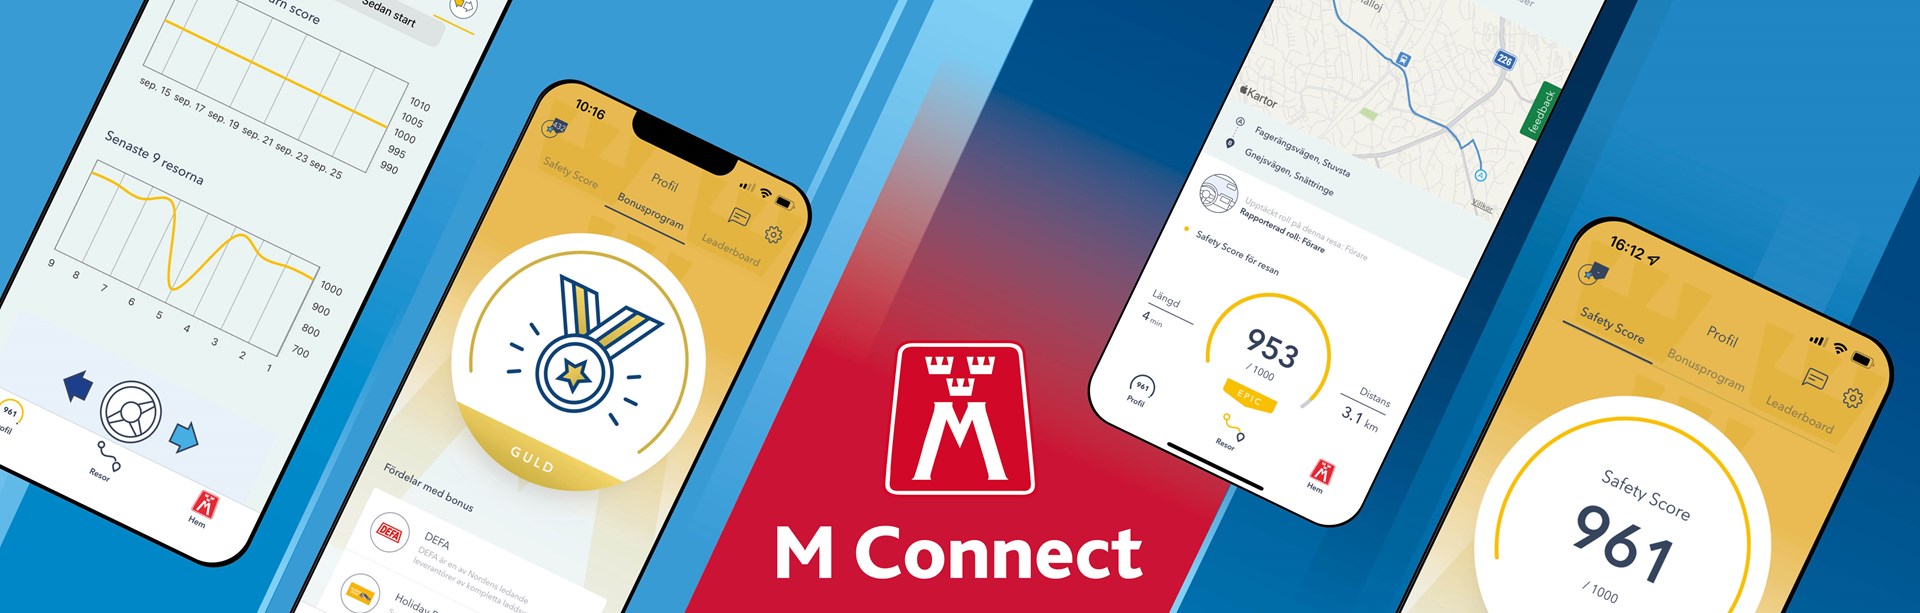 M Sveriges app M Connect belönar smart körstil